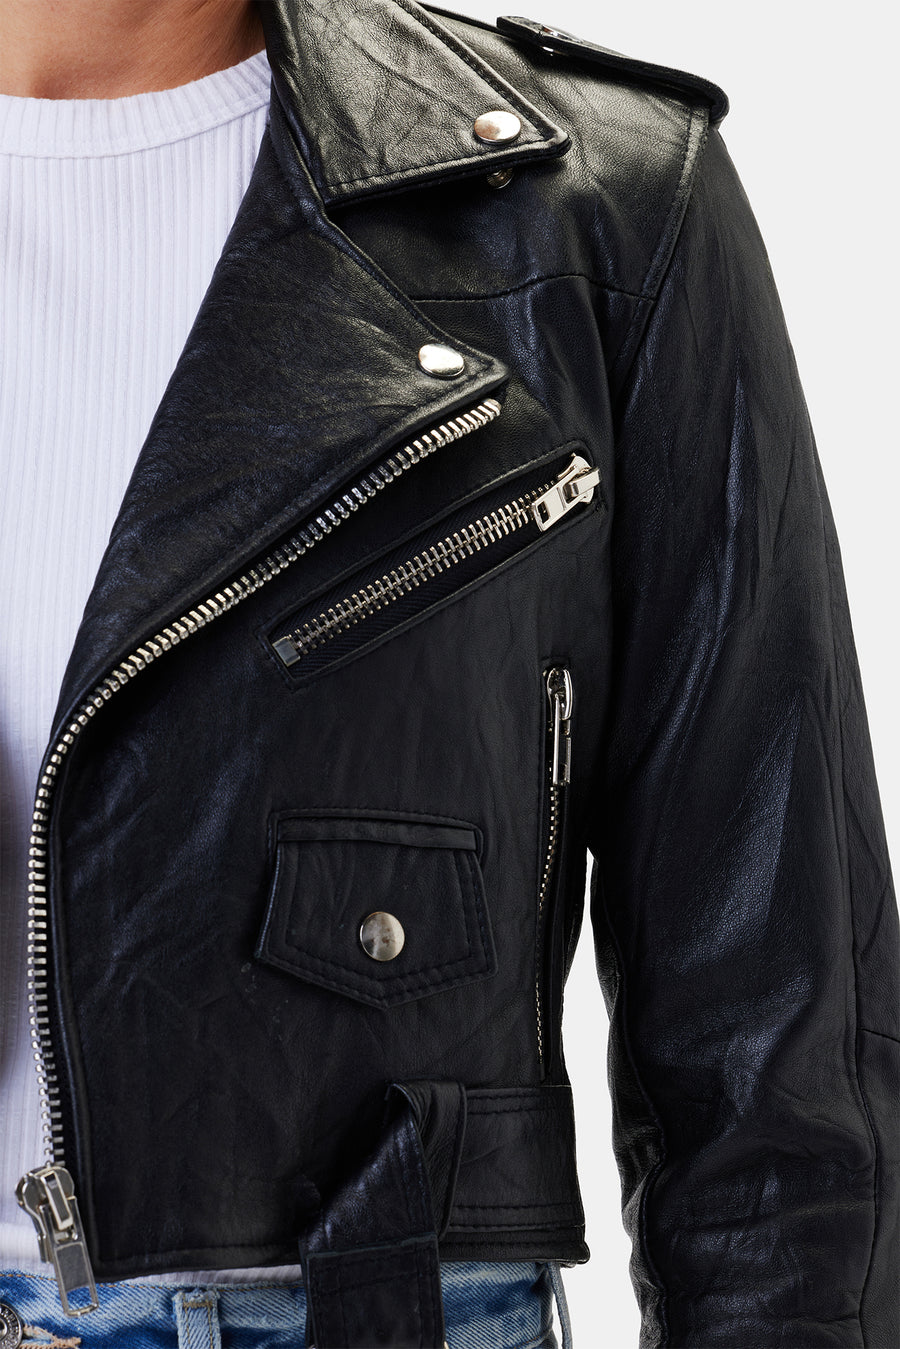 Deadwood Joan Leather Biker Jacket - Black